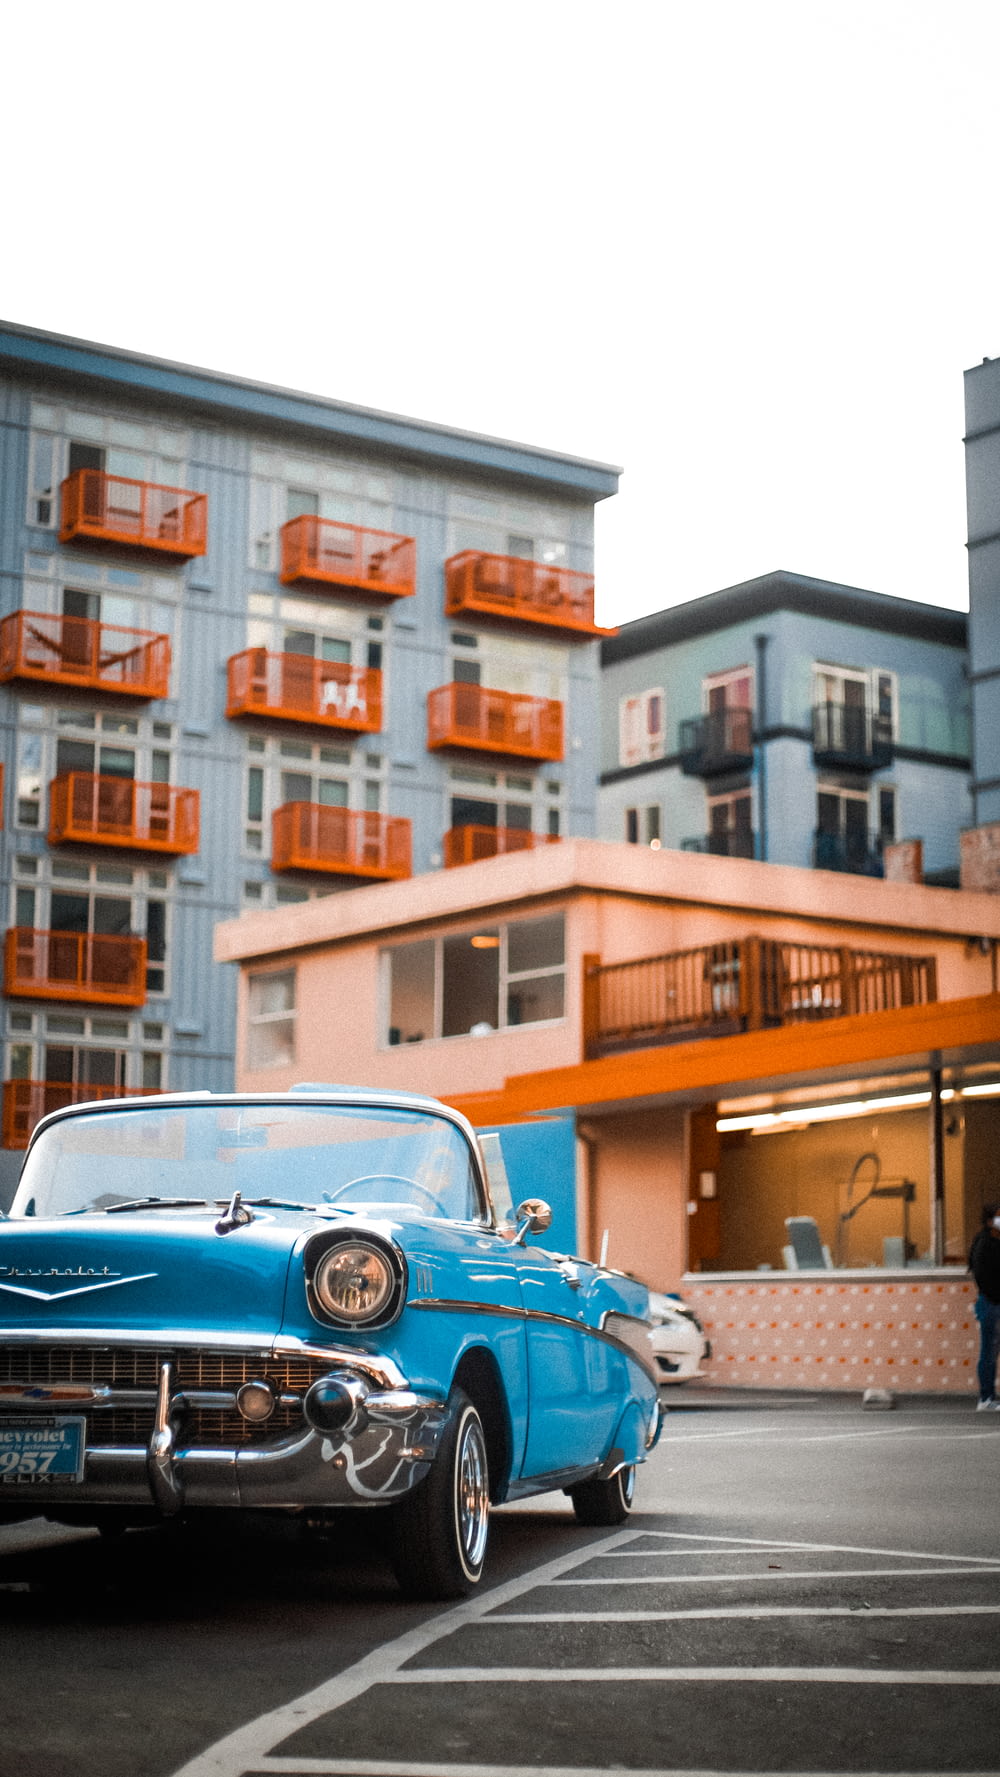 昼間、茶色の建物の近くに駐車された青い車